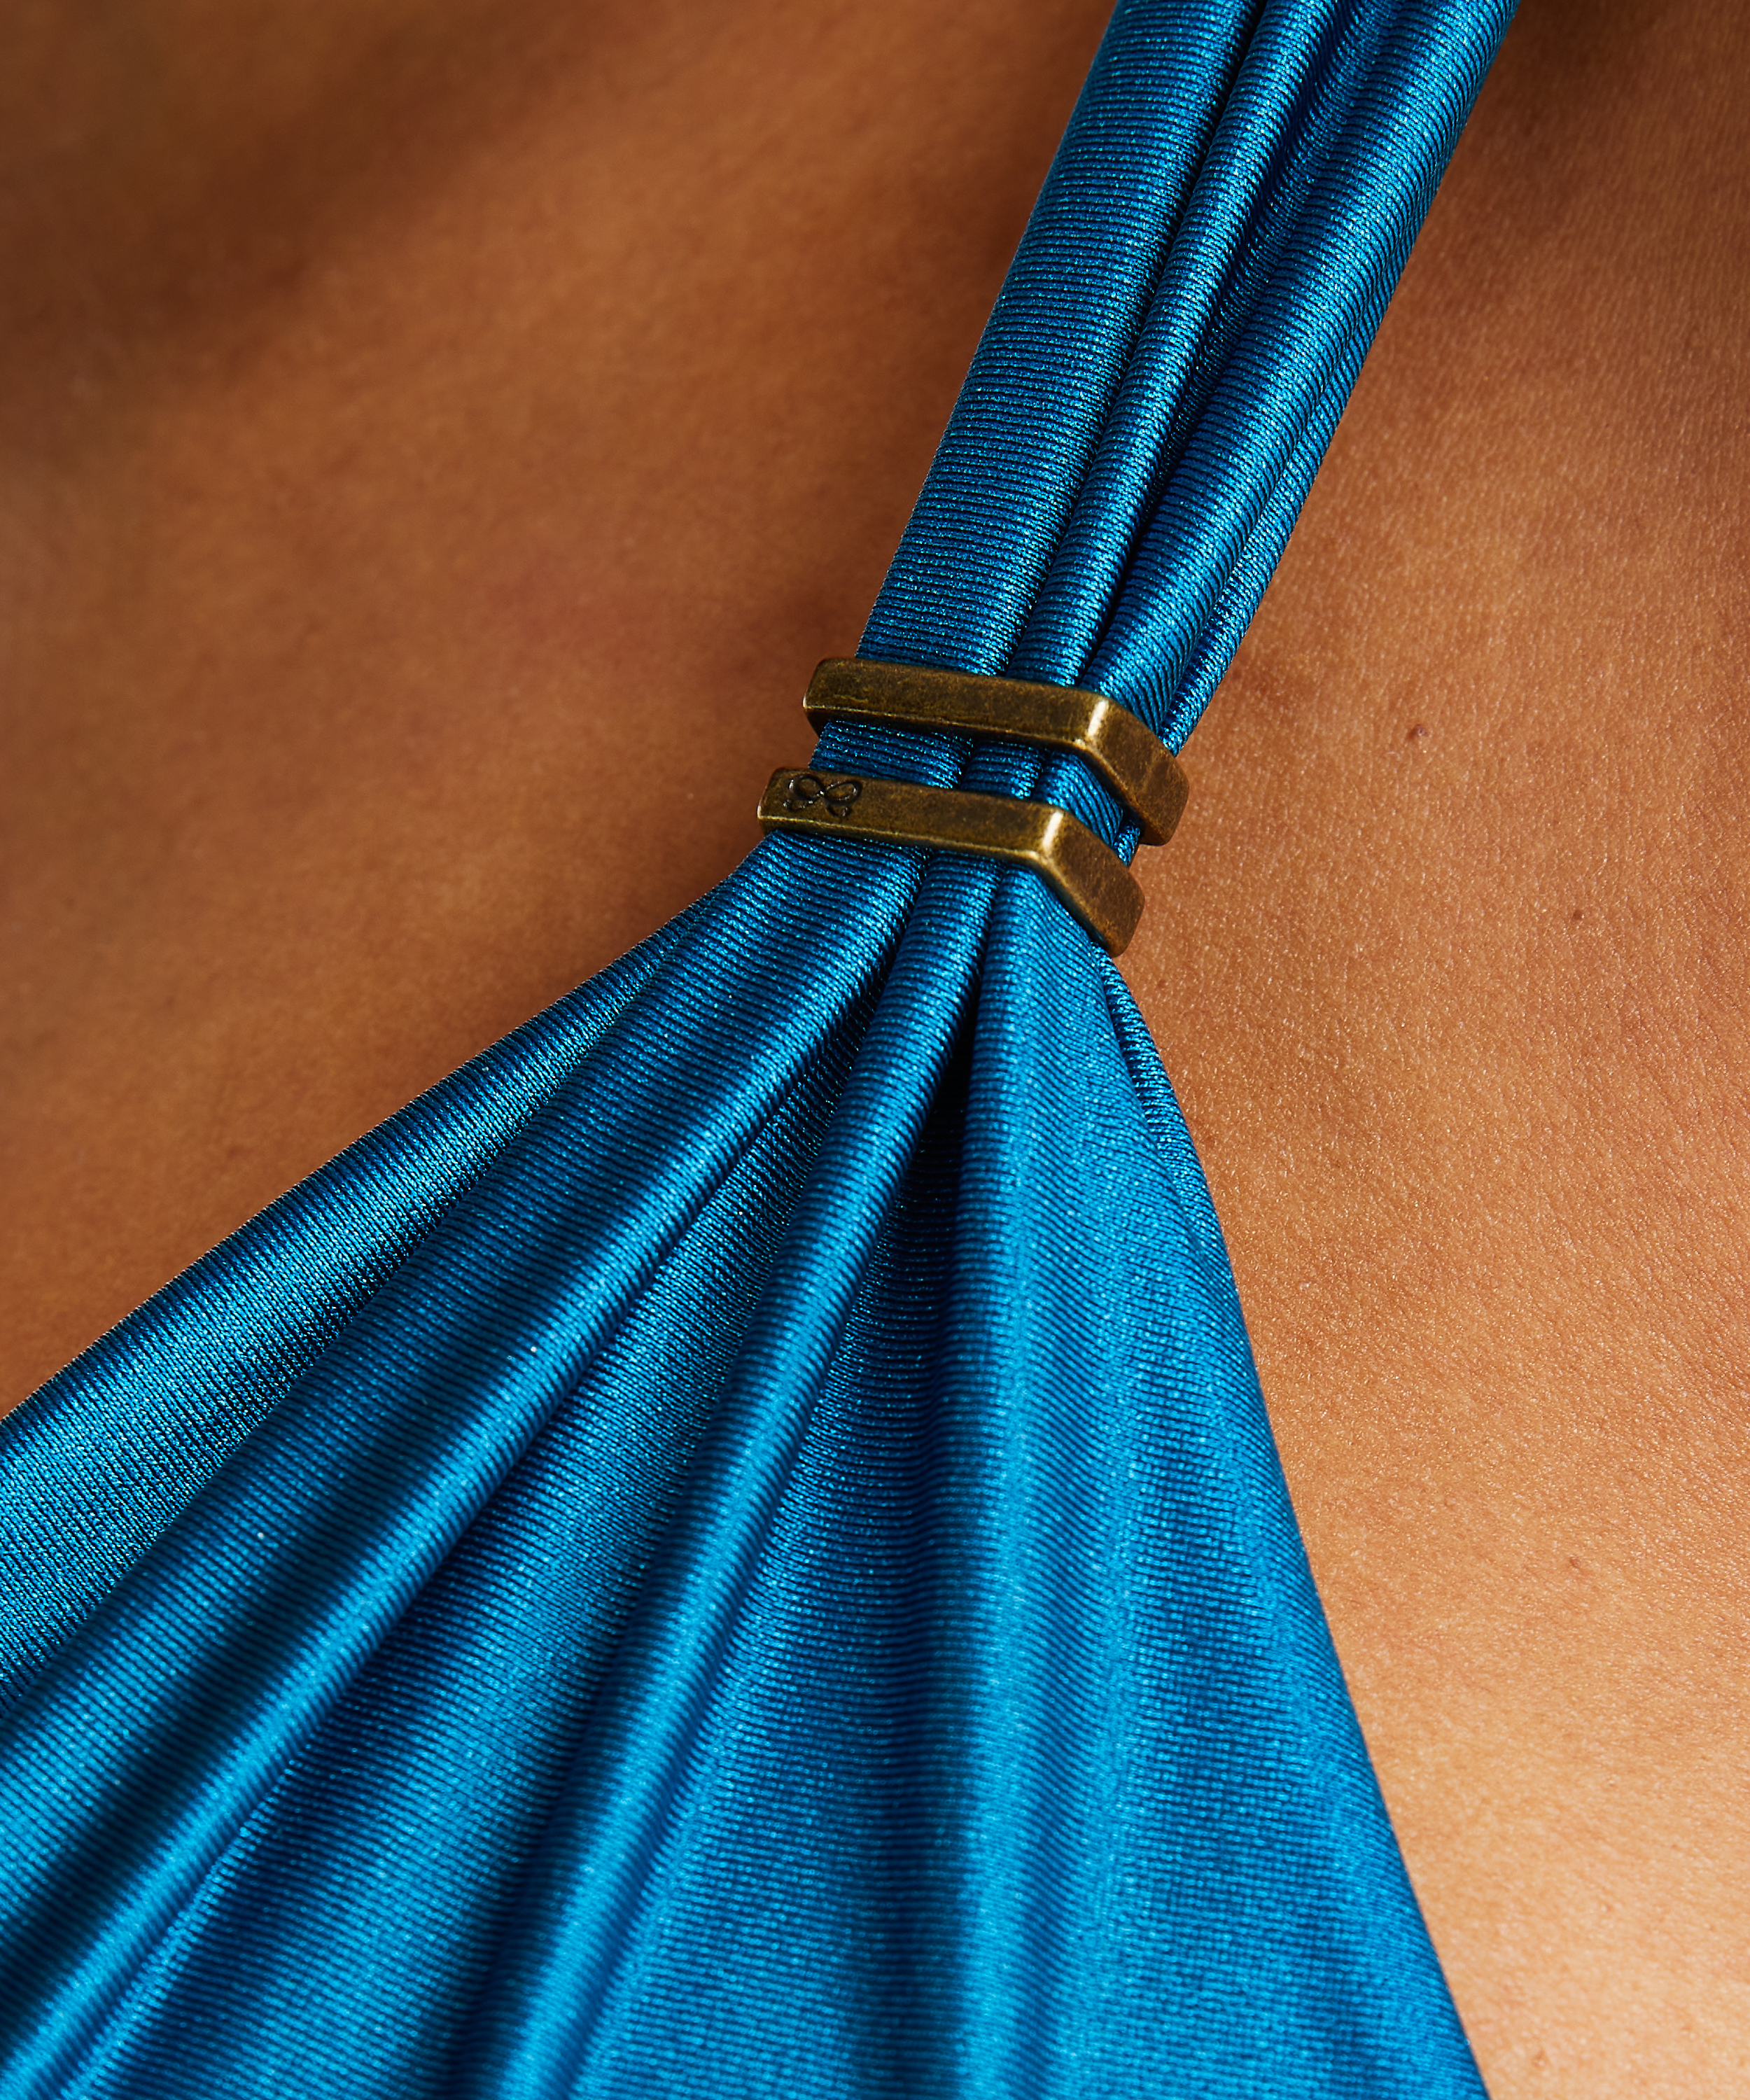 Usztywniona góra od bikini z fiszbinami Sunset Dreams - miseczki E+, Niebieski, main